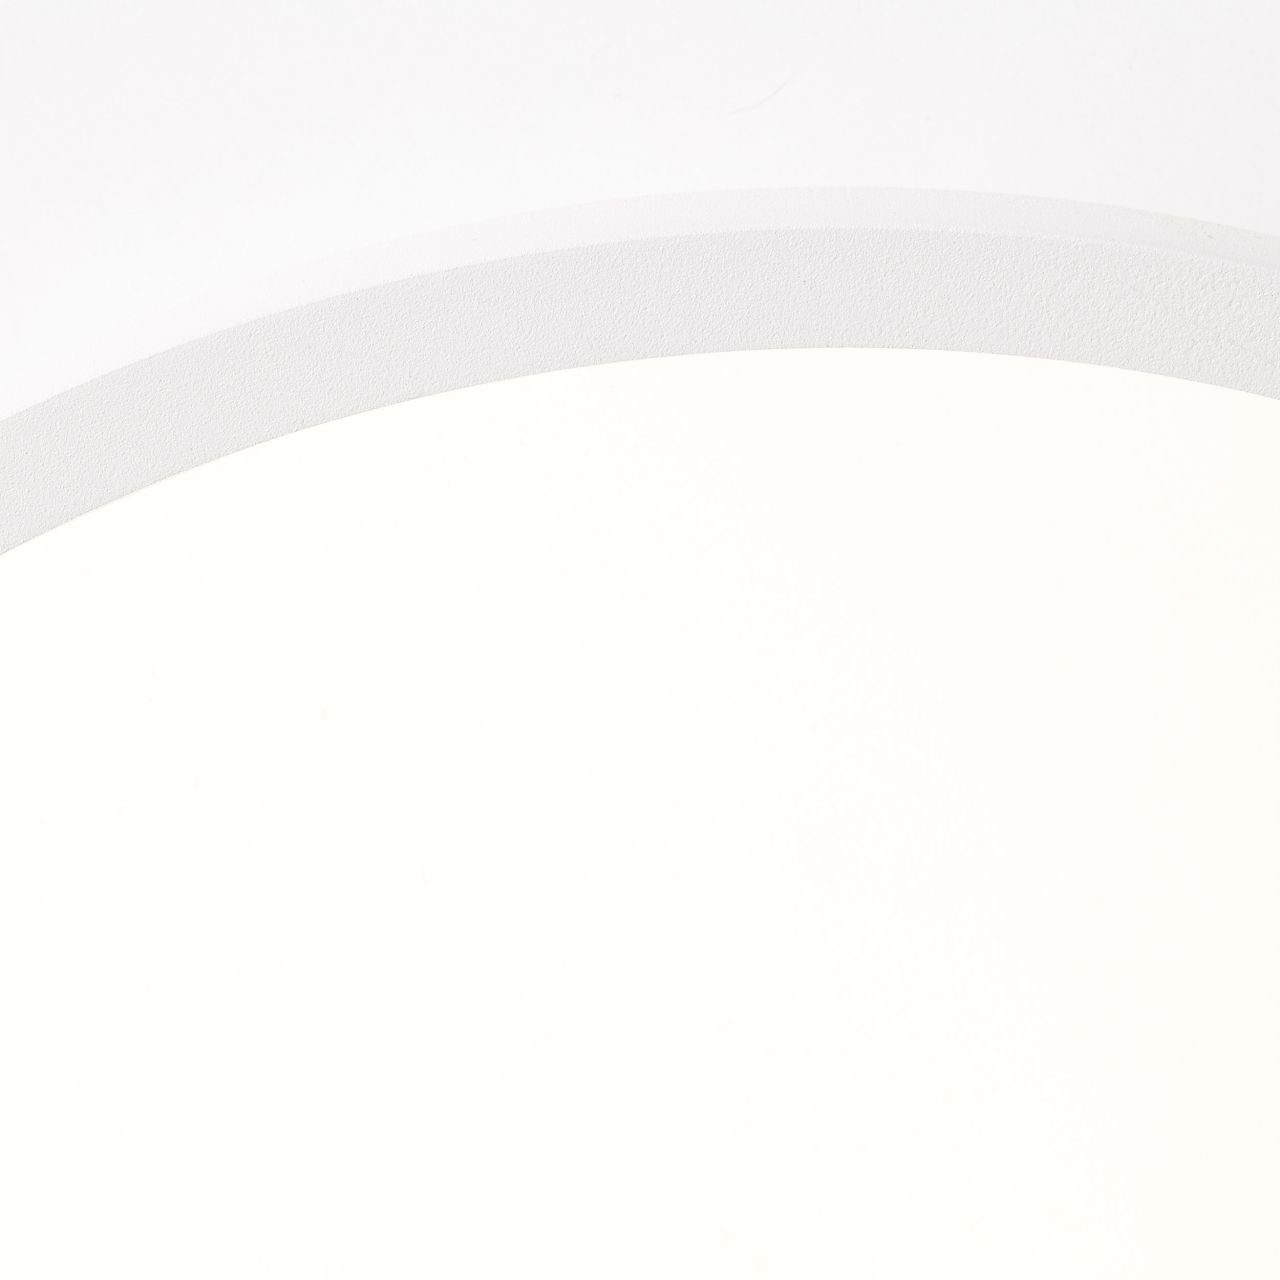 Lampe Buffi 24W 2700K, LED 35cm Deckenleuchte Brilliant Deckenaufbau-Paneel 1x Buffi, sand/weiß/warmweiß L